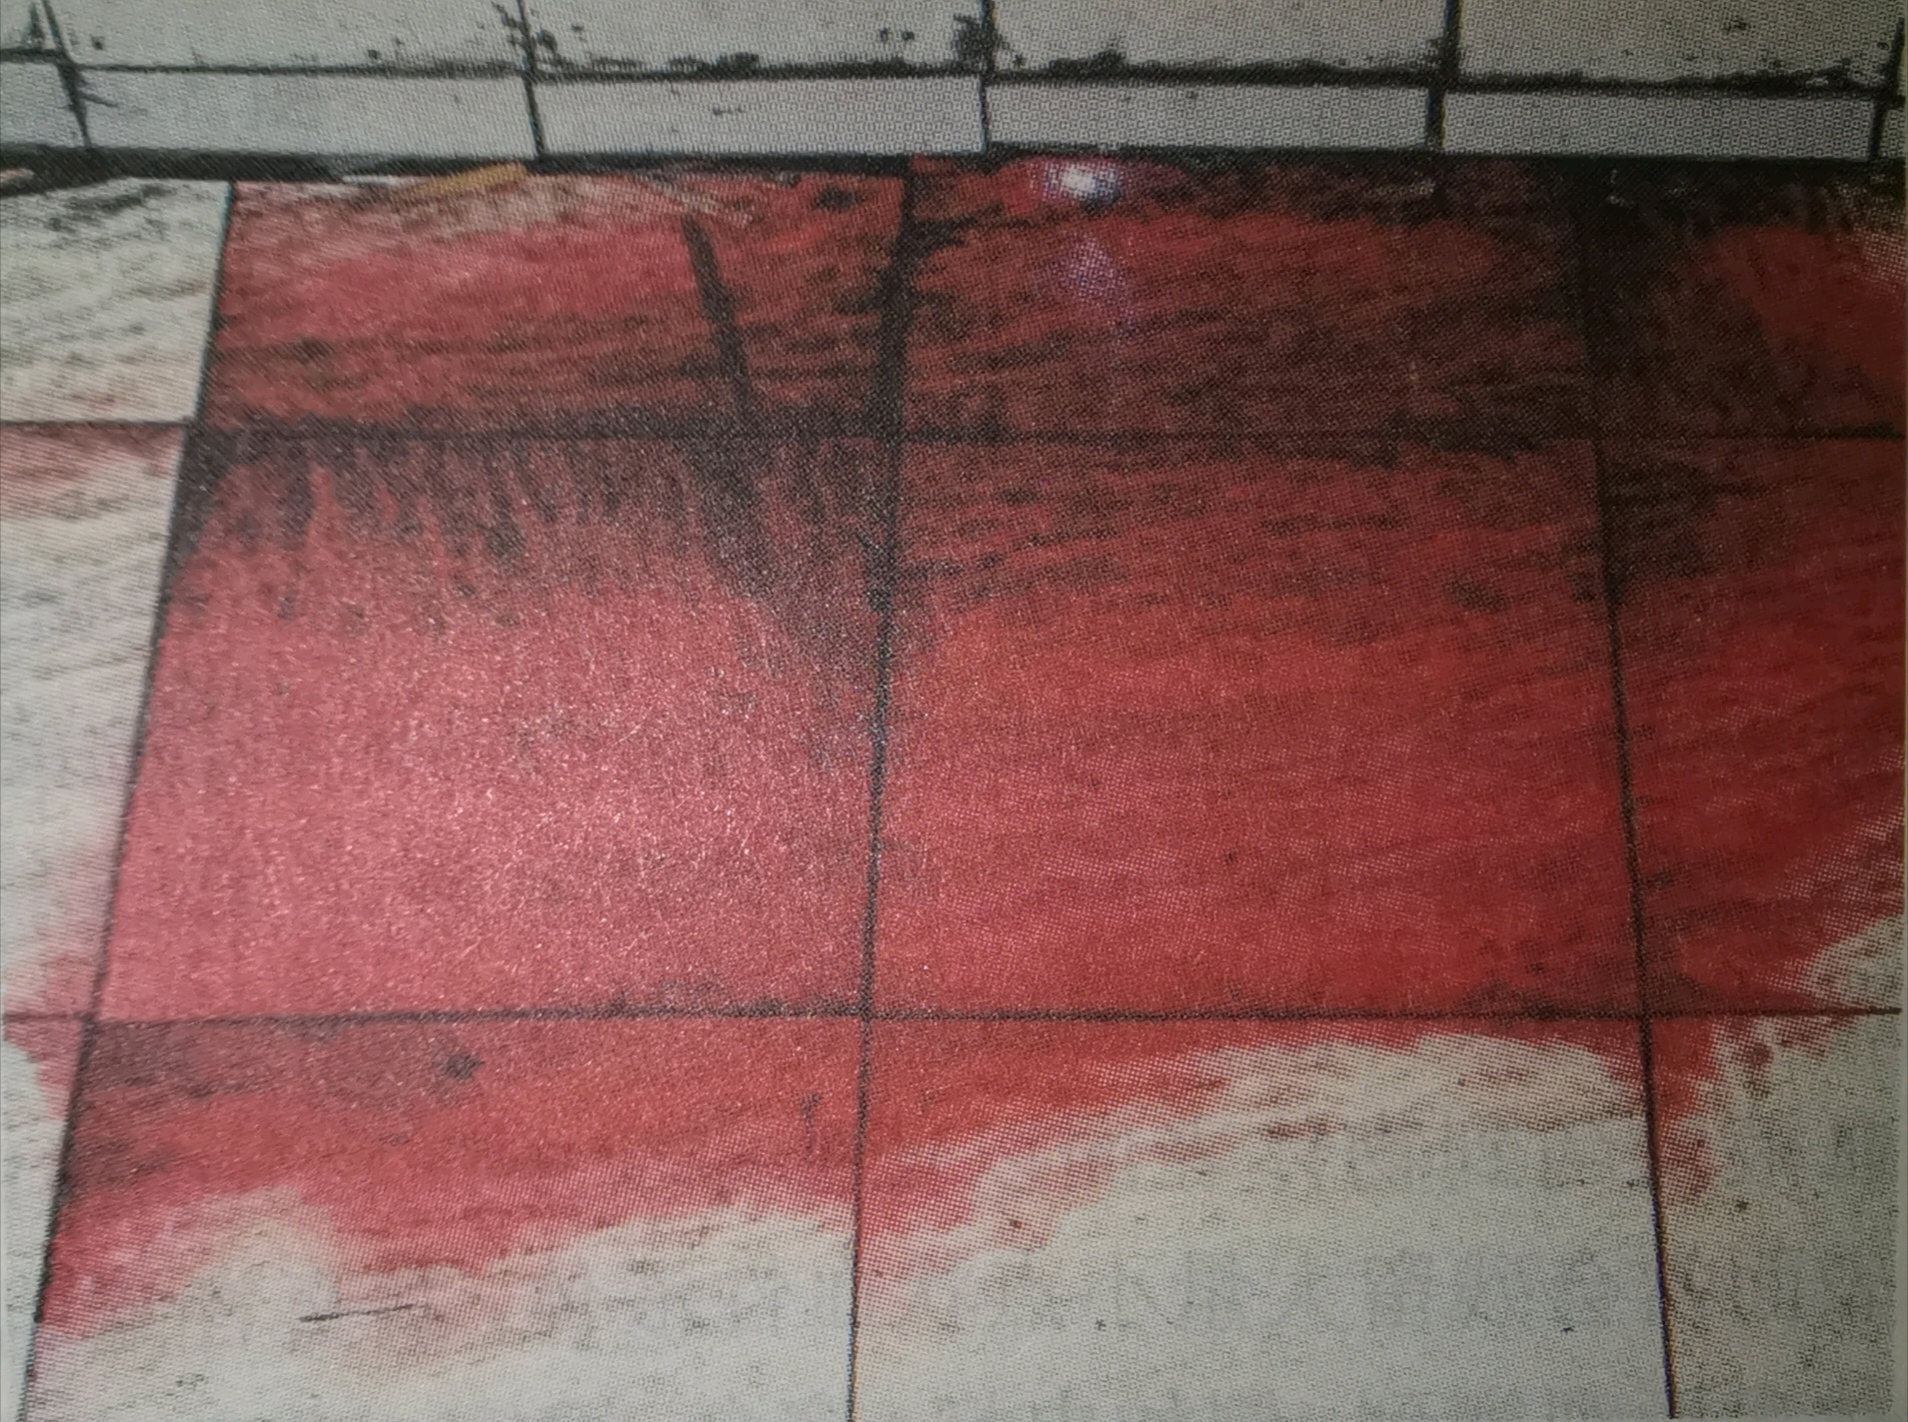 白色地板有血图片真实-图库-五毛网